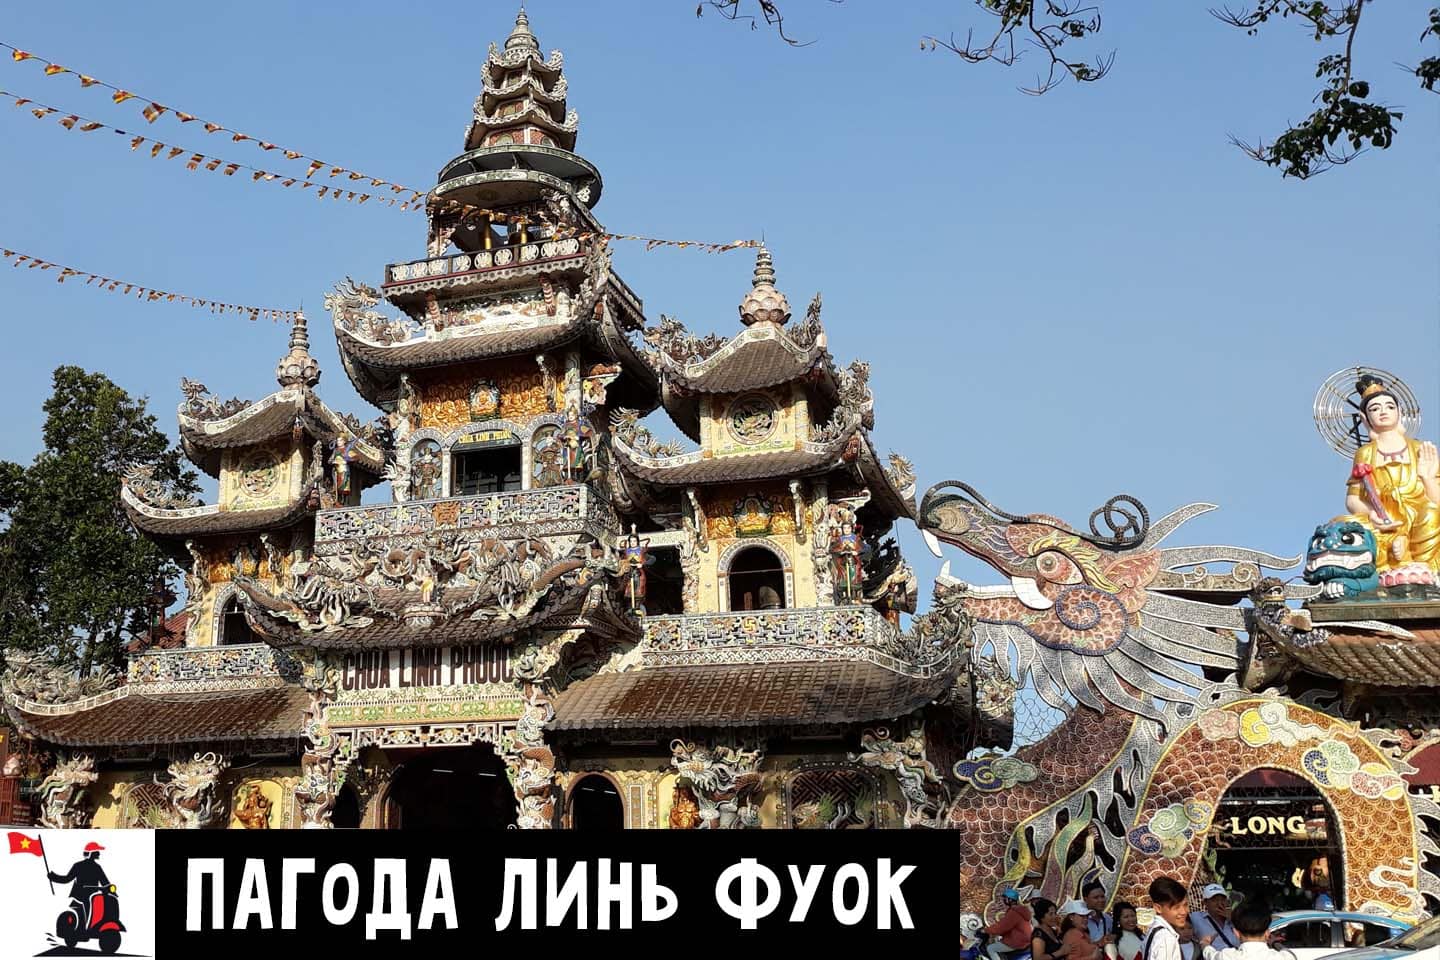 pagoda linh phuoc